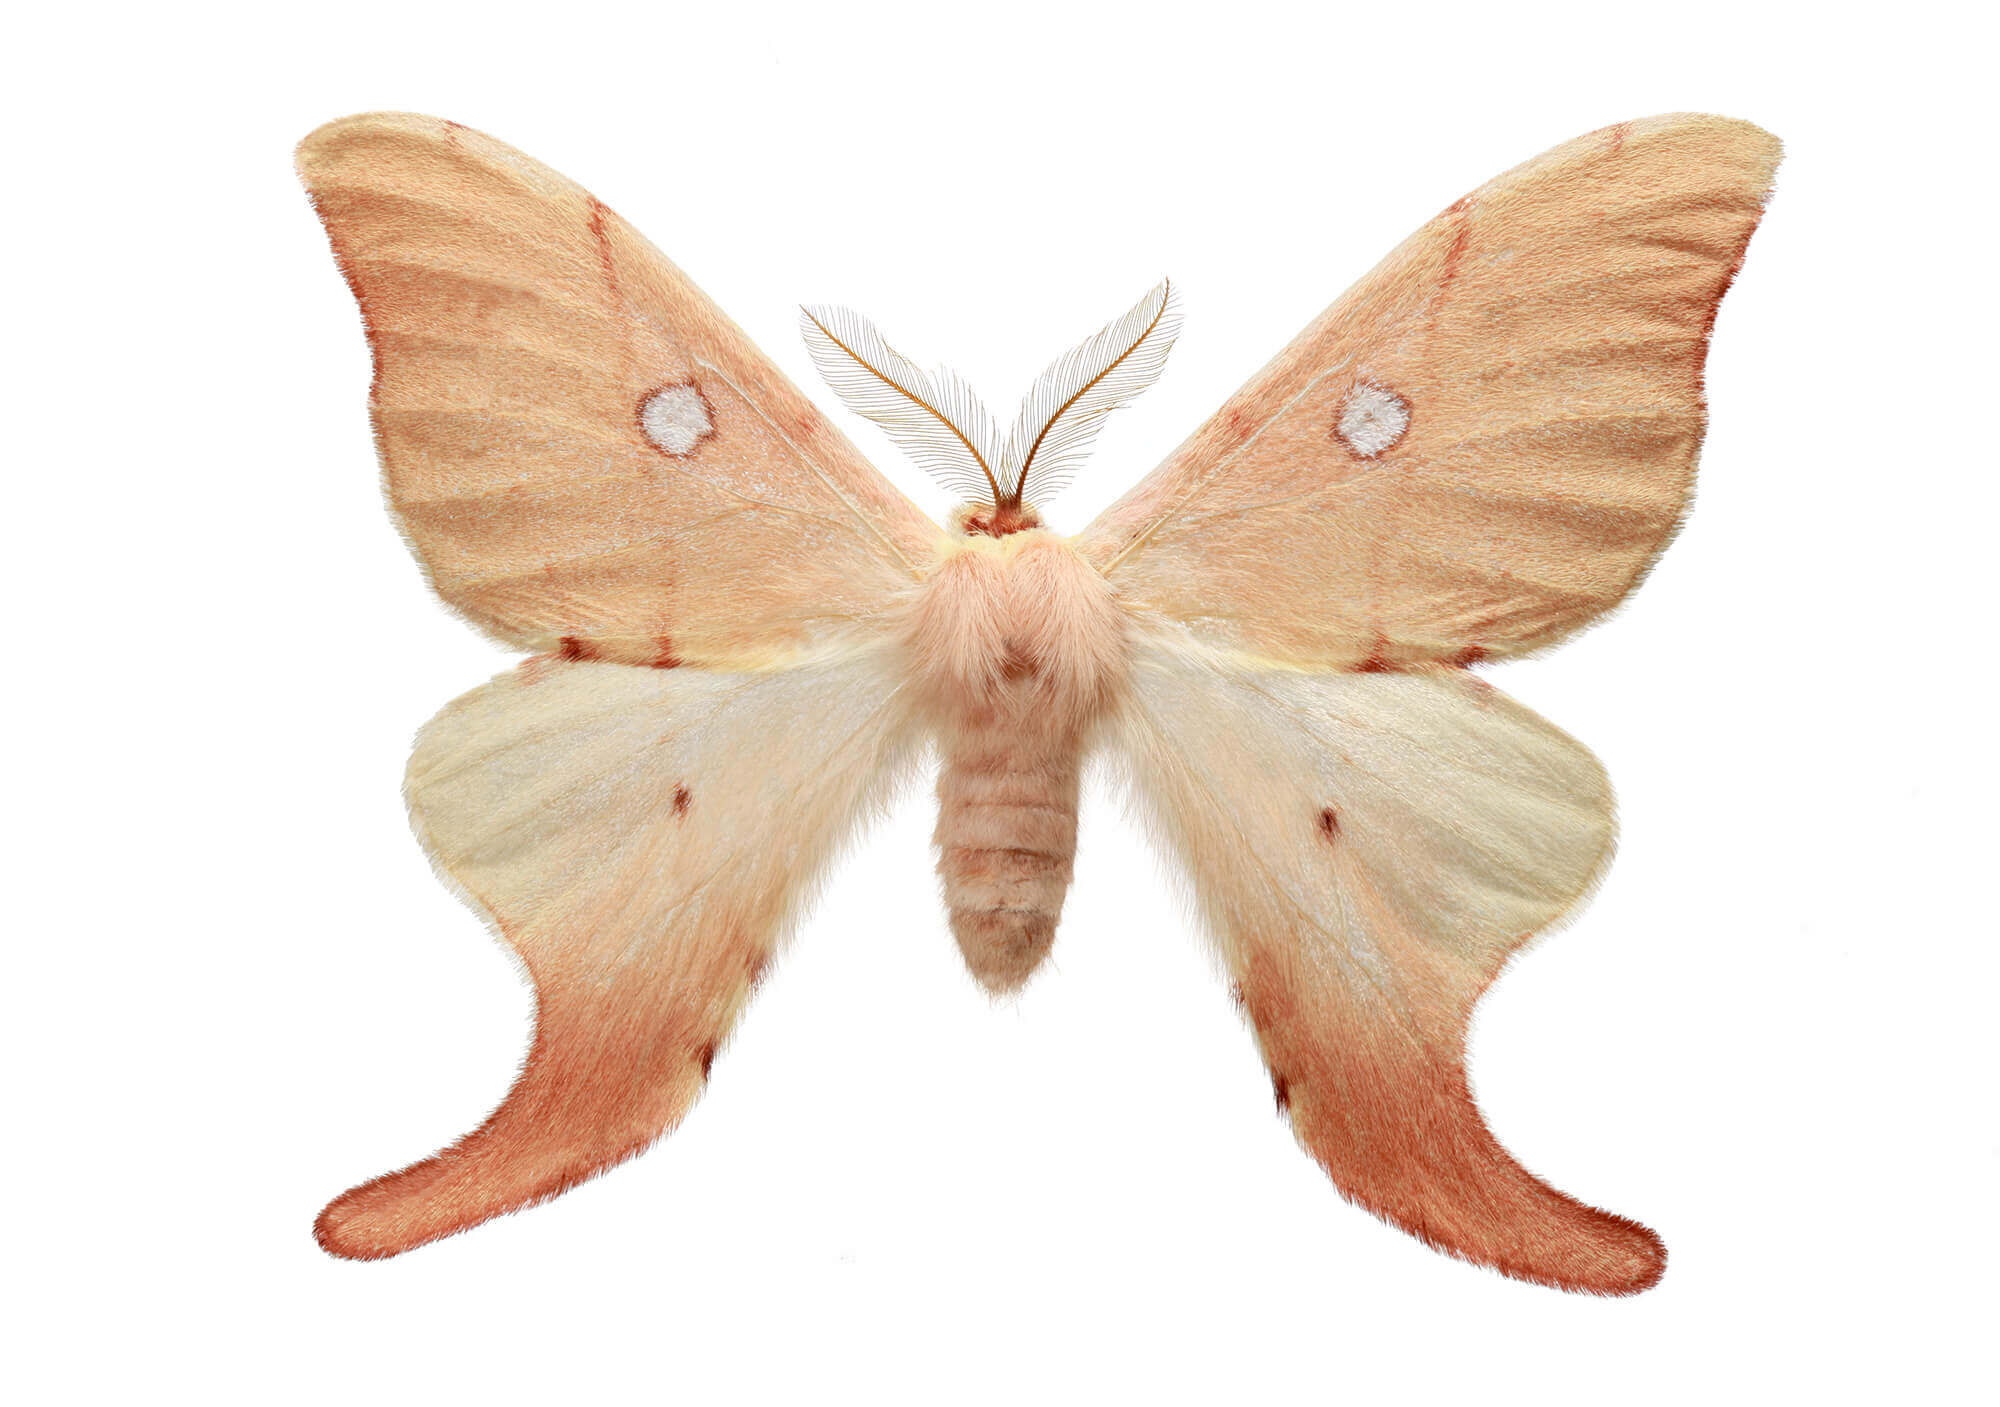 La mariposa cercofana (Cercophana venusta) es una polilla que habita en la zona central de Chile. Durante el día se mantienen en reposo, volando sólo de noche.